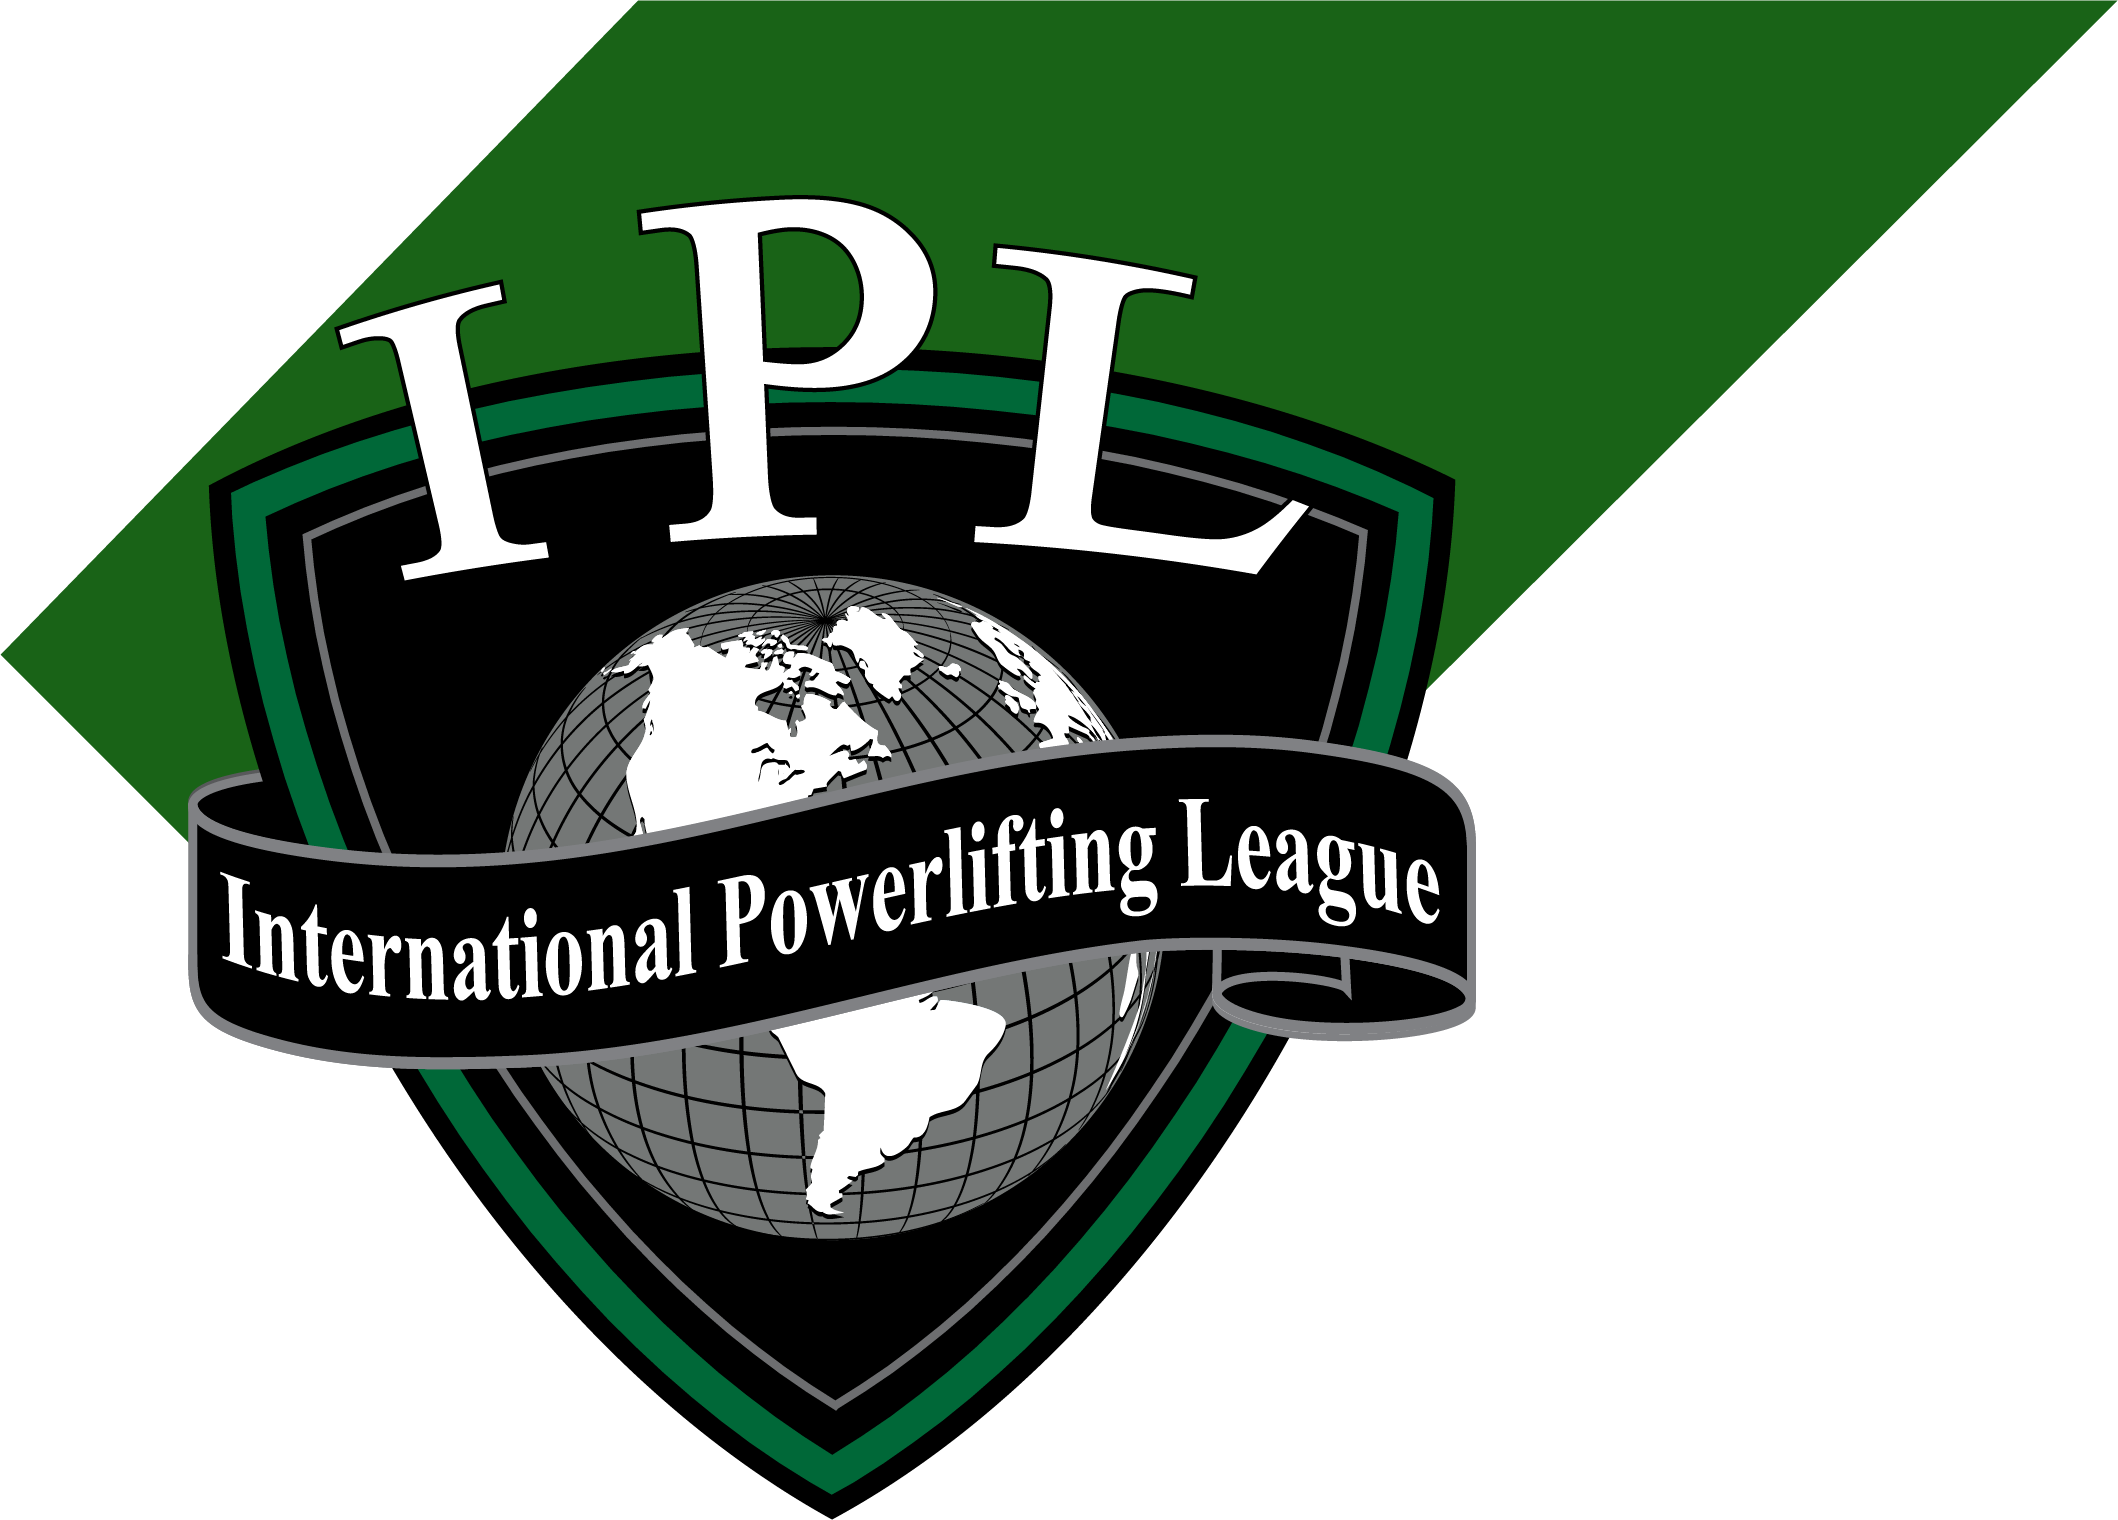 Ipl Logo PNG Transparent Images in Transparent - Ipl Logo Png Transparent Images